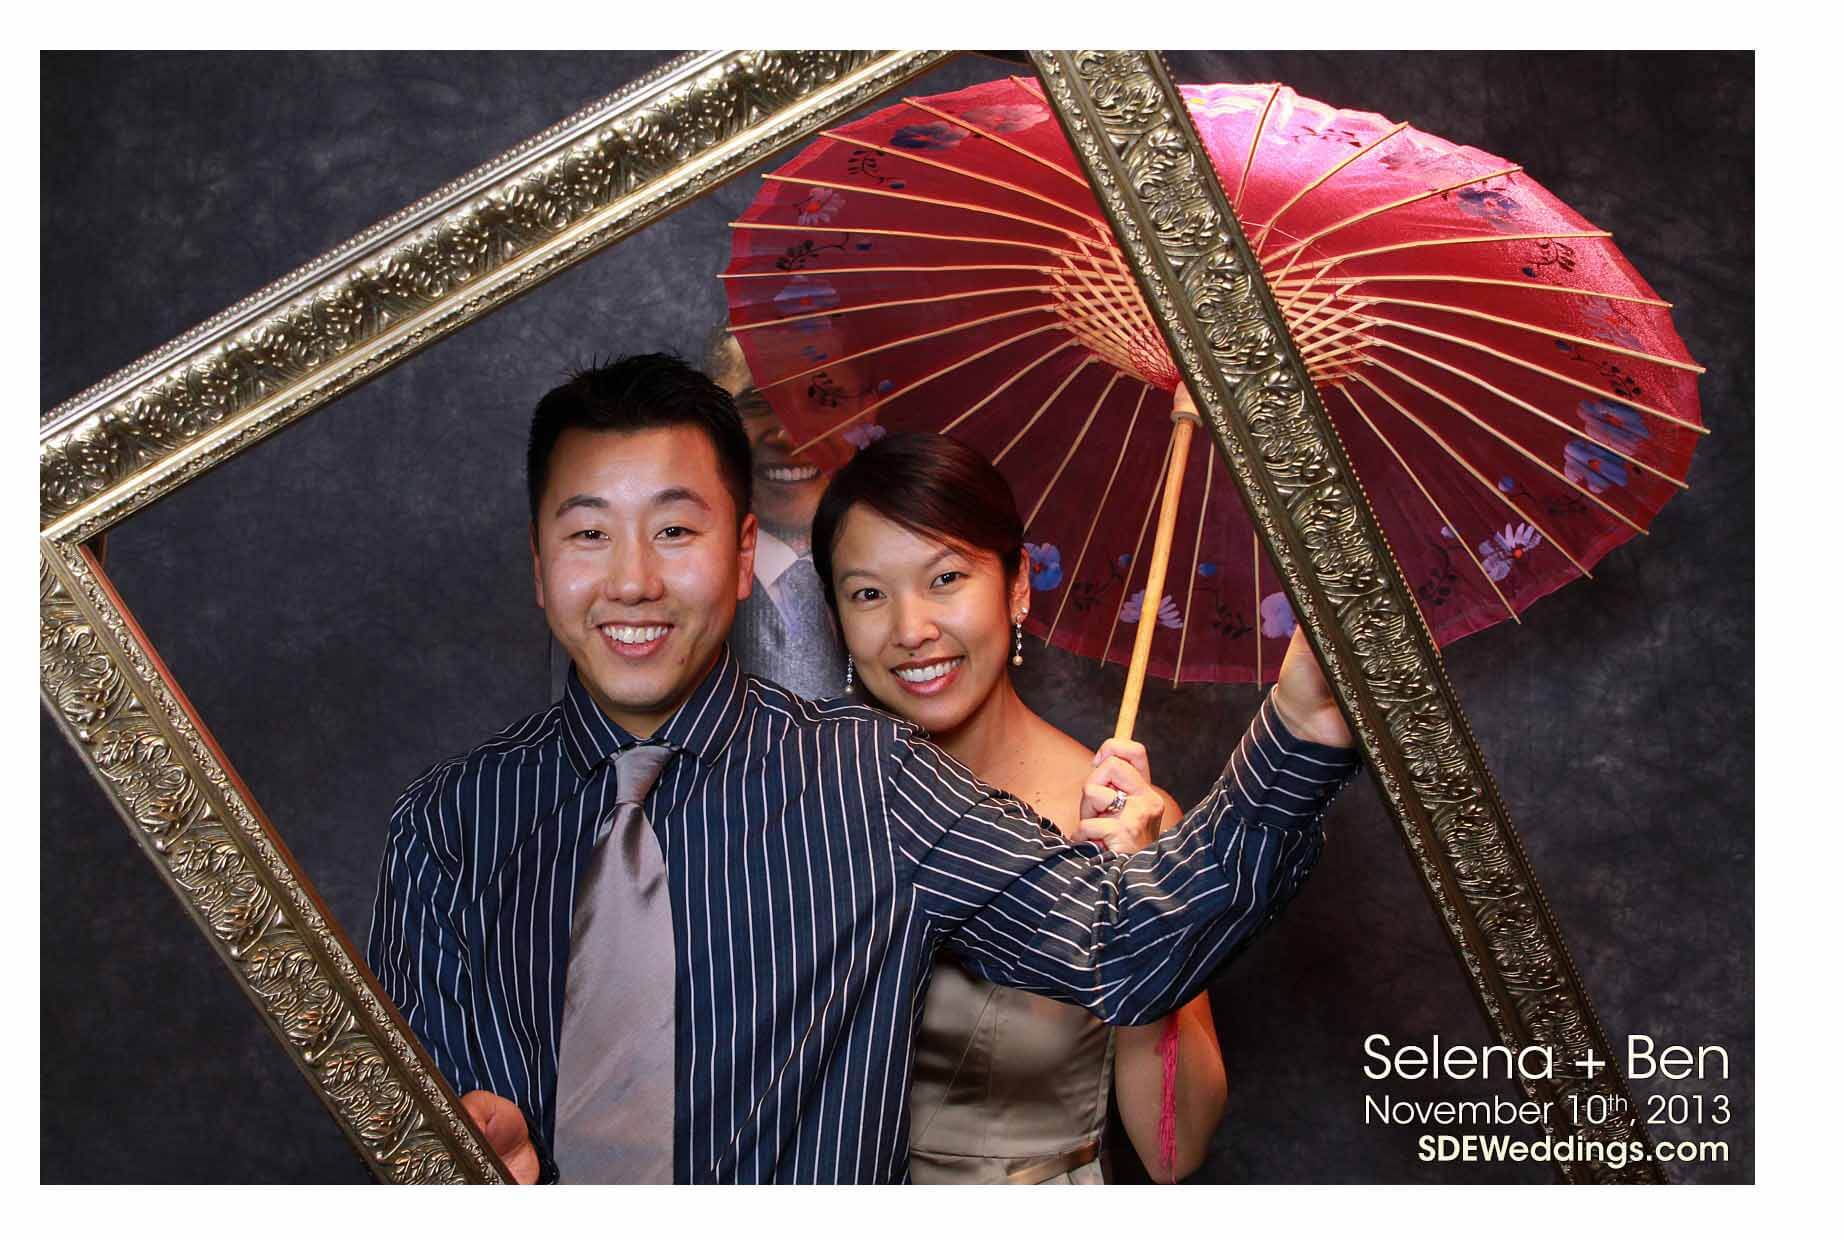 Toronto Wedding Photobooth Photos Ben Selena